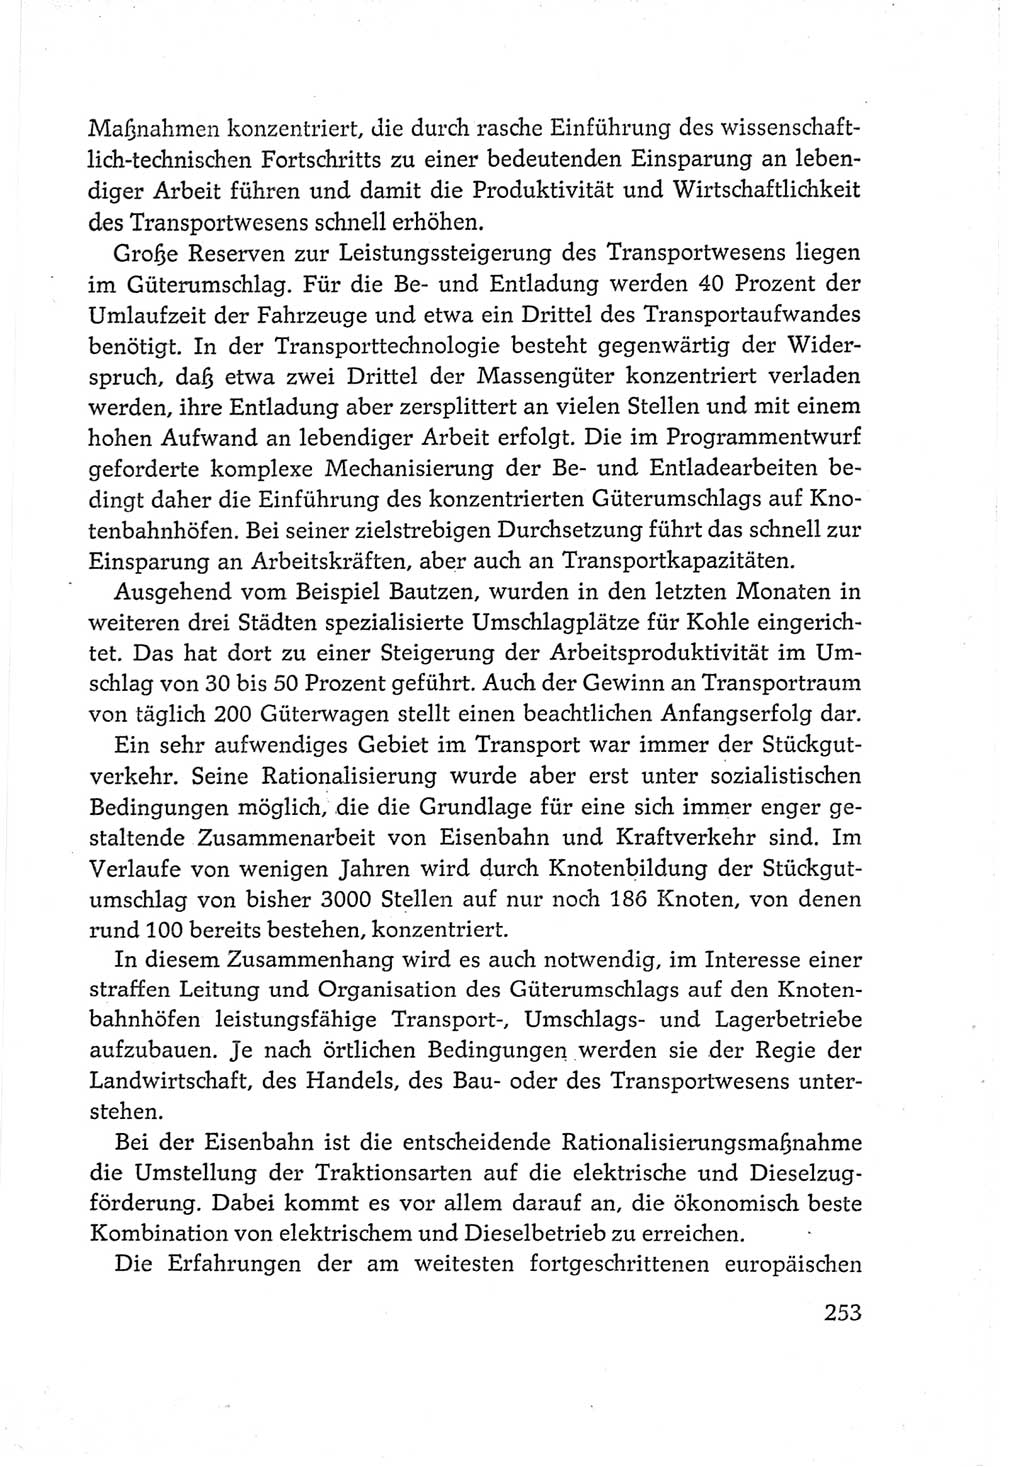 Protokoll der Verhandlungen des Ⅵ. Parteitages der Sozialistischen Einheitspartei Deutschlands (SED) [Deutsche Demokratische Republik (DDR)] 1963, Band Ⅲ, Seite 253 (Prot. Verh. Ⅵ. PT SED DDR 1963, Bd. Ⅲ, S. 253)